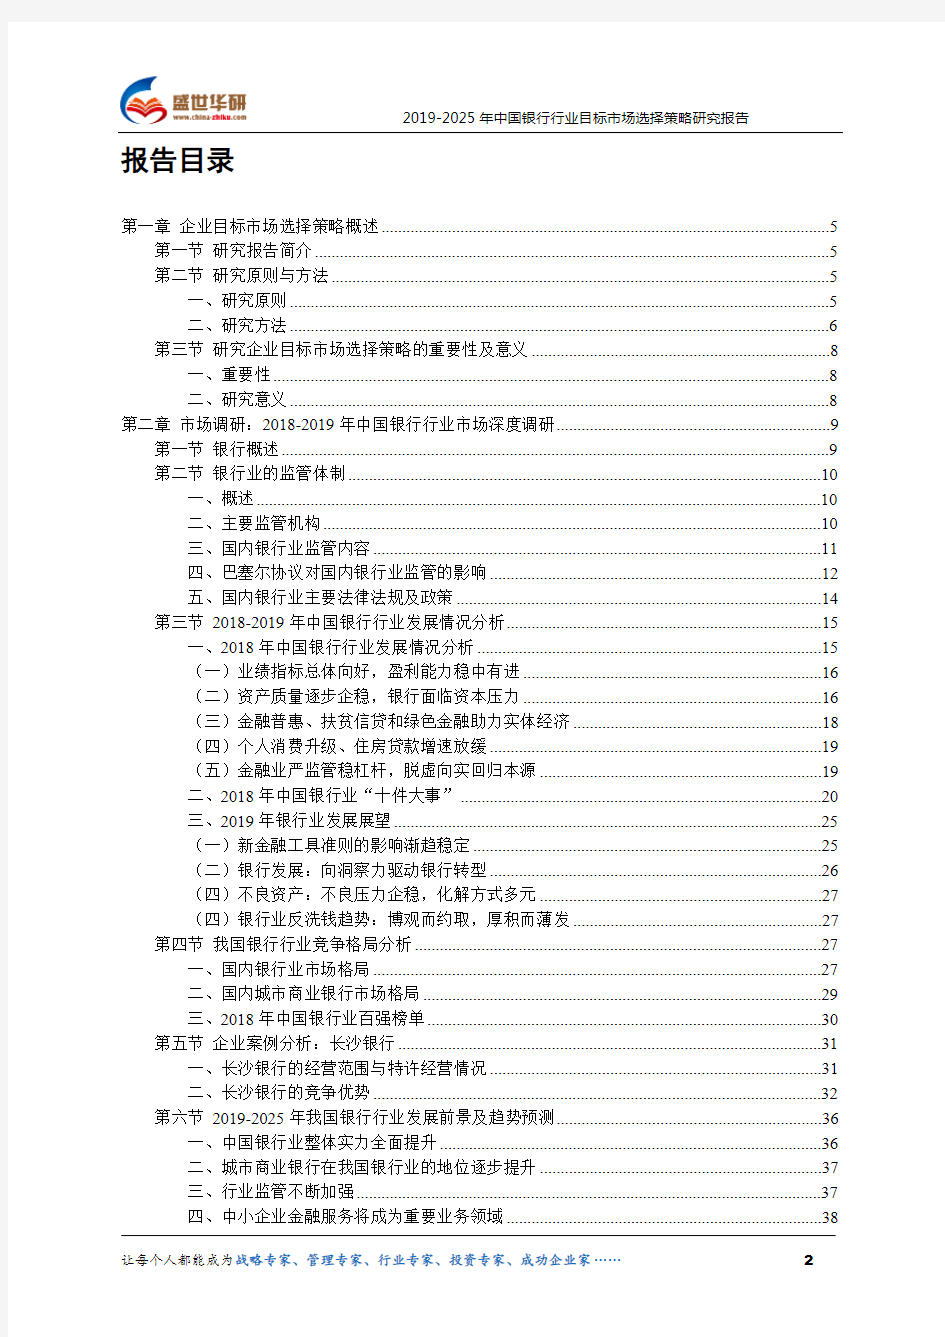 【完整版】2019-2025年中国银行行业目标市场选择策略研究报告